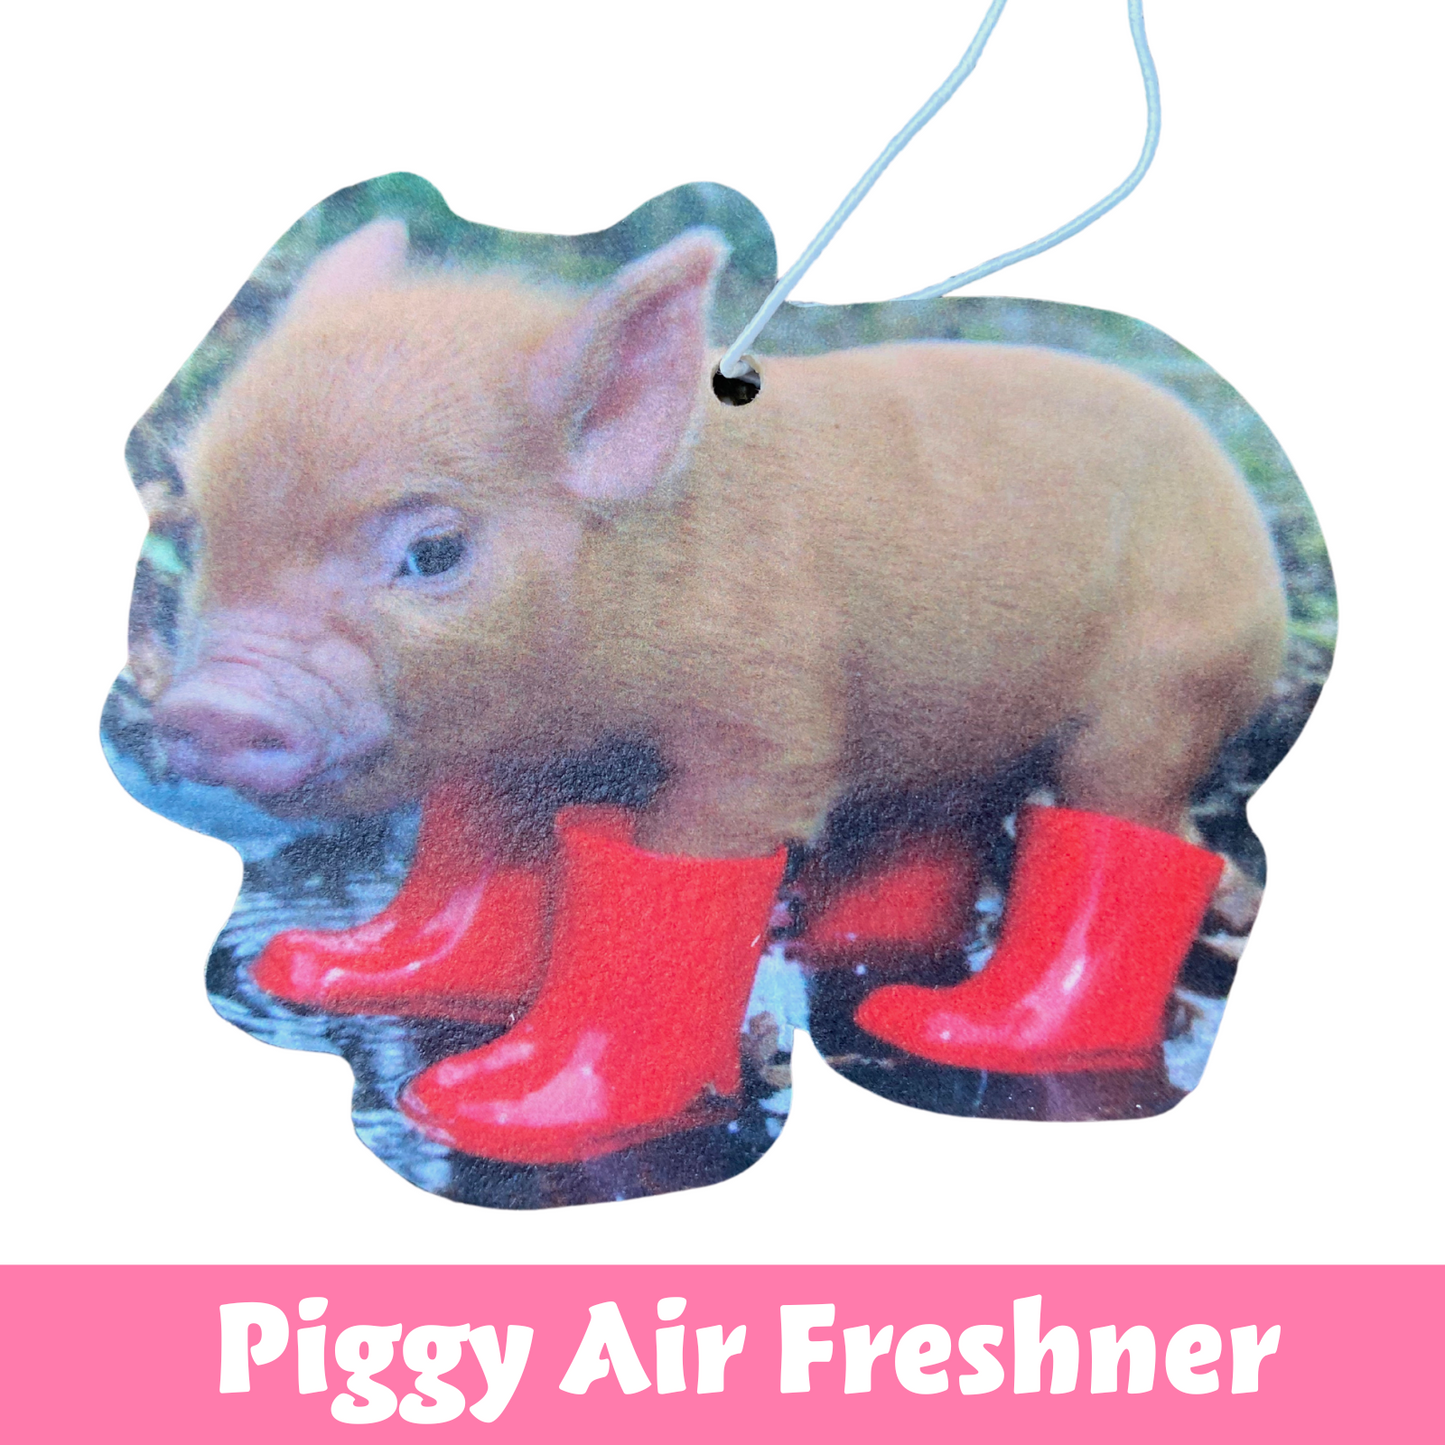 Piggy Air Freshner